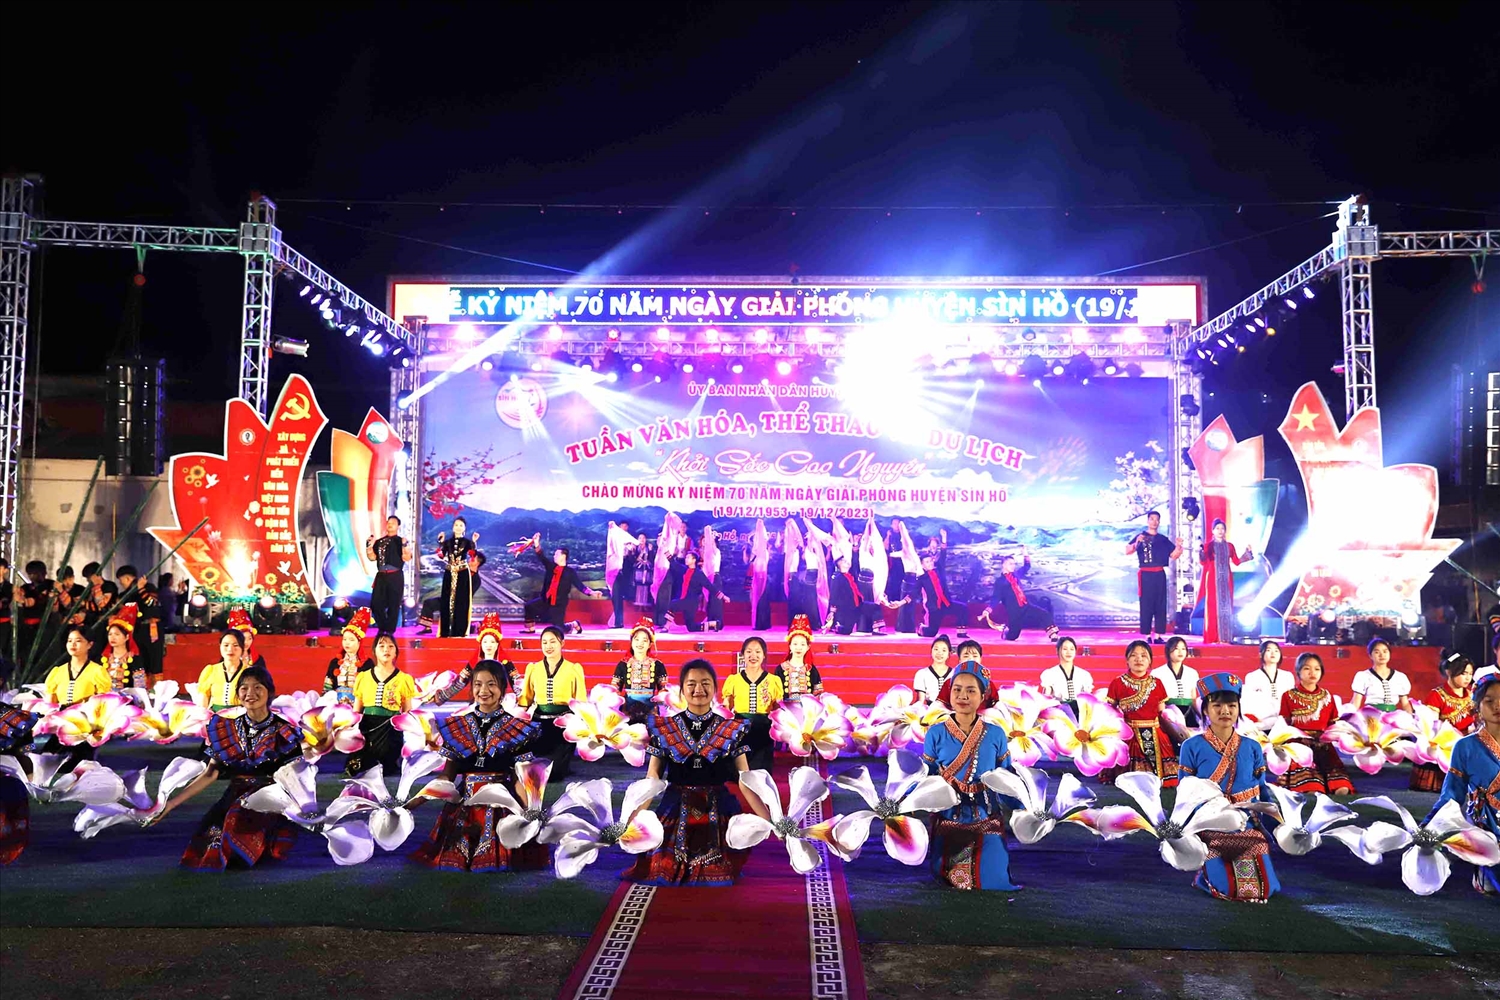 Trước đó, tối 16/12, đã diễn ra Chương trình nghệ thuật chào mừng Lễ kỷ niệm với chủ đề “Khởi sắc Cao nguyên”, với sự tham gia của các nghệ sĩ, diễn viên, nghệ nhân các em học sinh trên địa bàn huyện Sìn Hồ biểu diễn